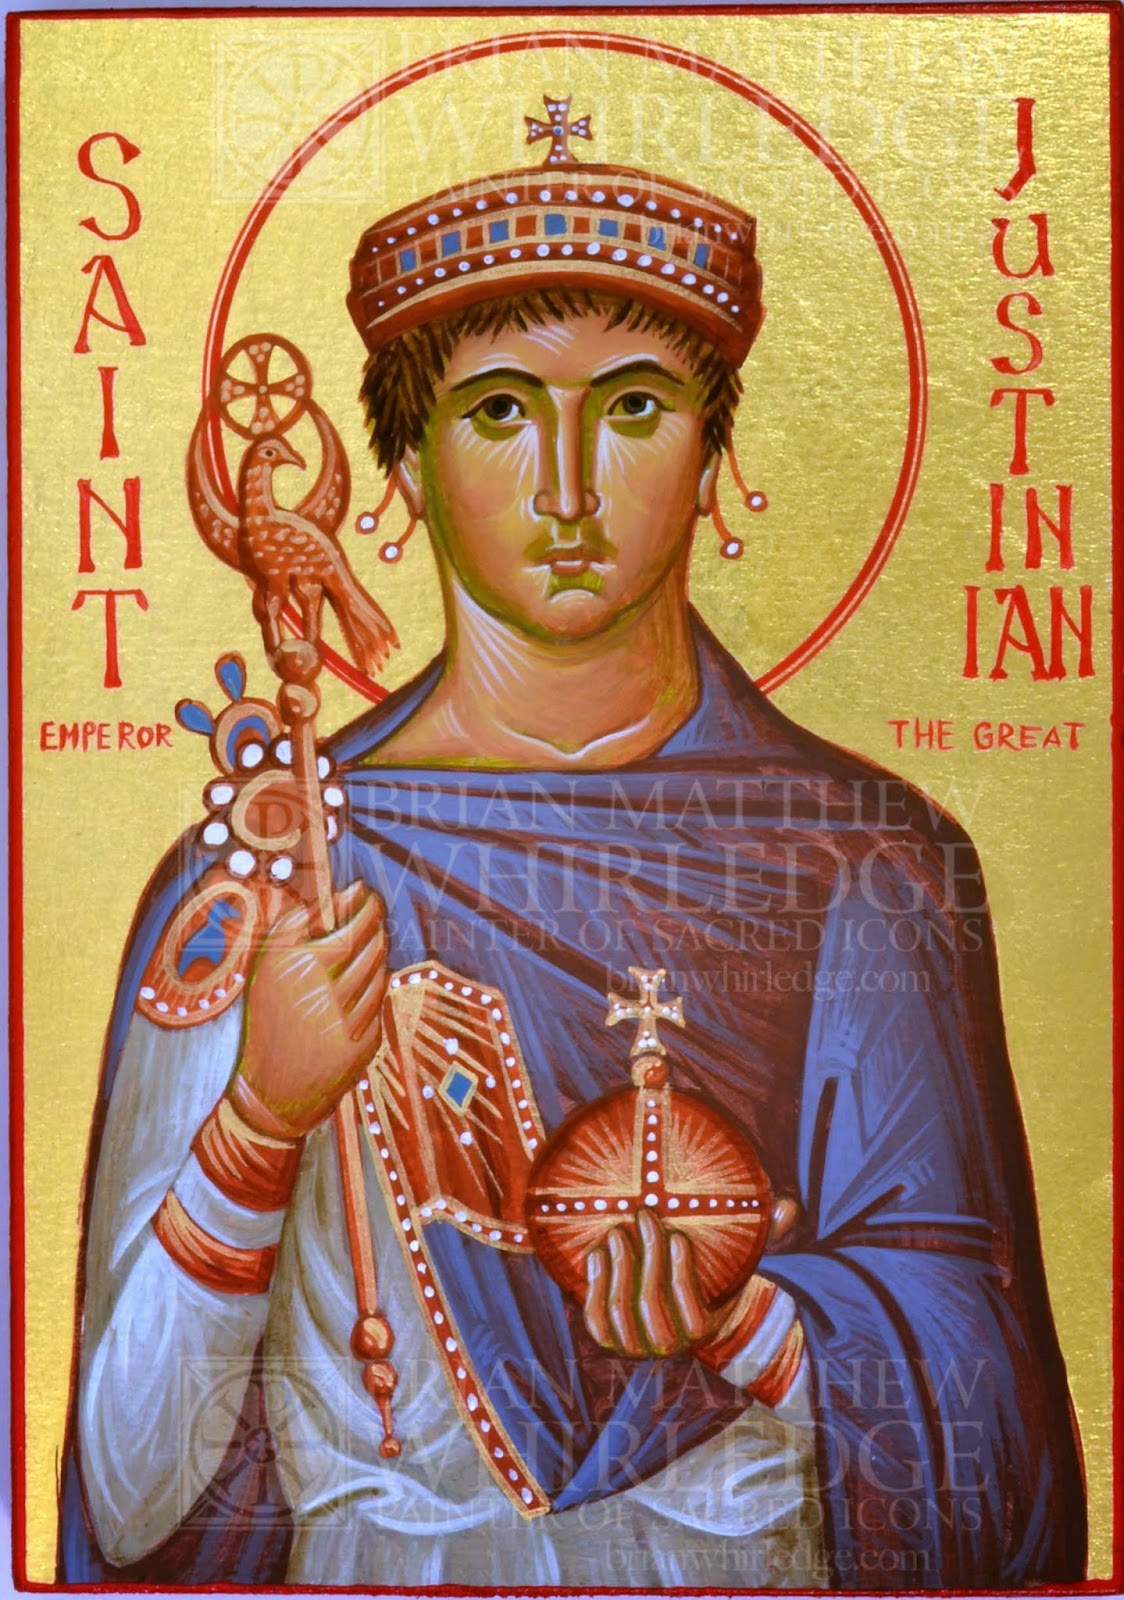 Св ii. Святой Юстиниан икона. Император Юстиниан икона. Святой Юстиниан Великий икона. Византийский Император Юстиниан.